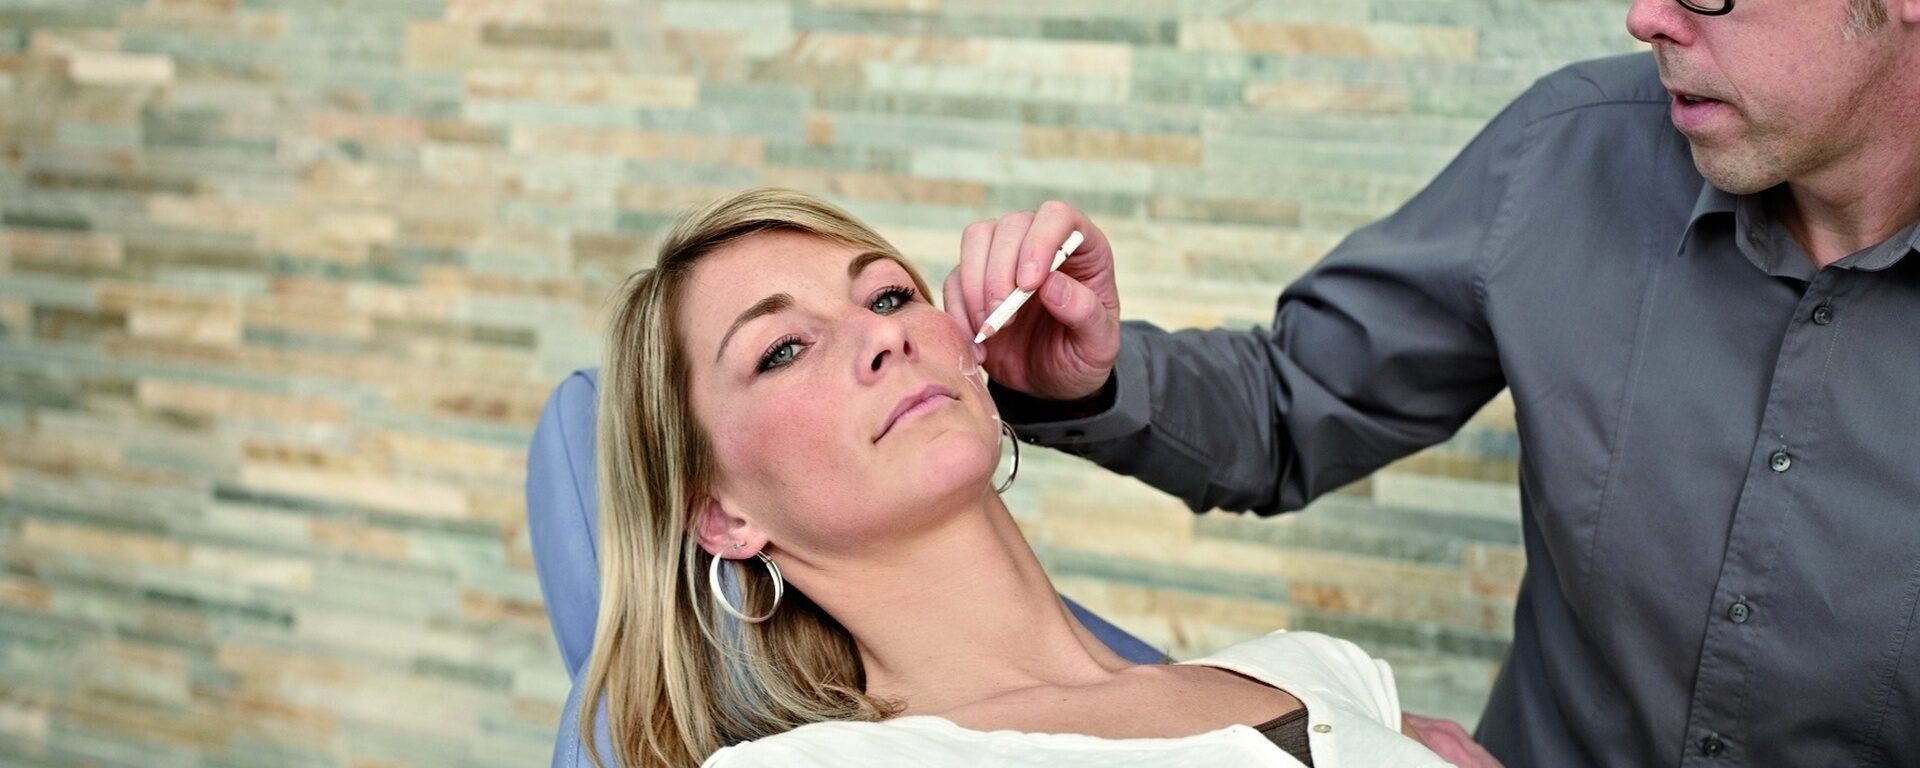 Faltenbehandlung einer Frau durchgeführt von Herr Dr. med. Frank Rösken in der Asklepios Klinik St. Wolfgang